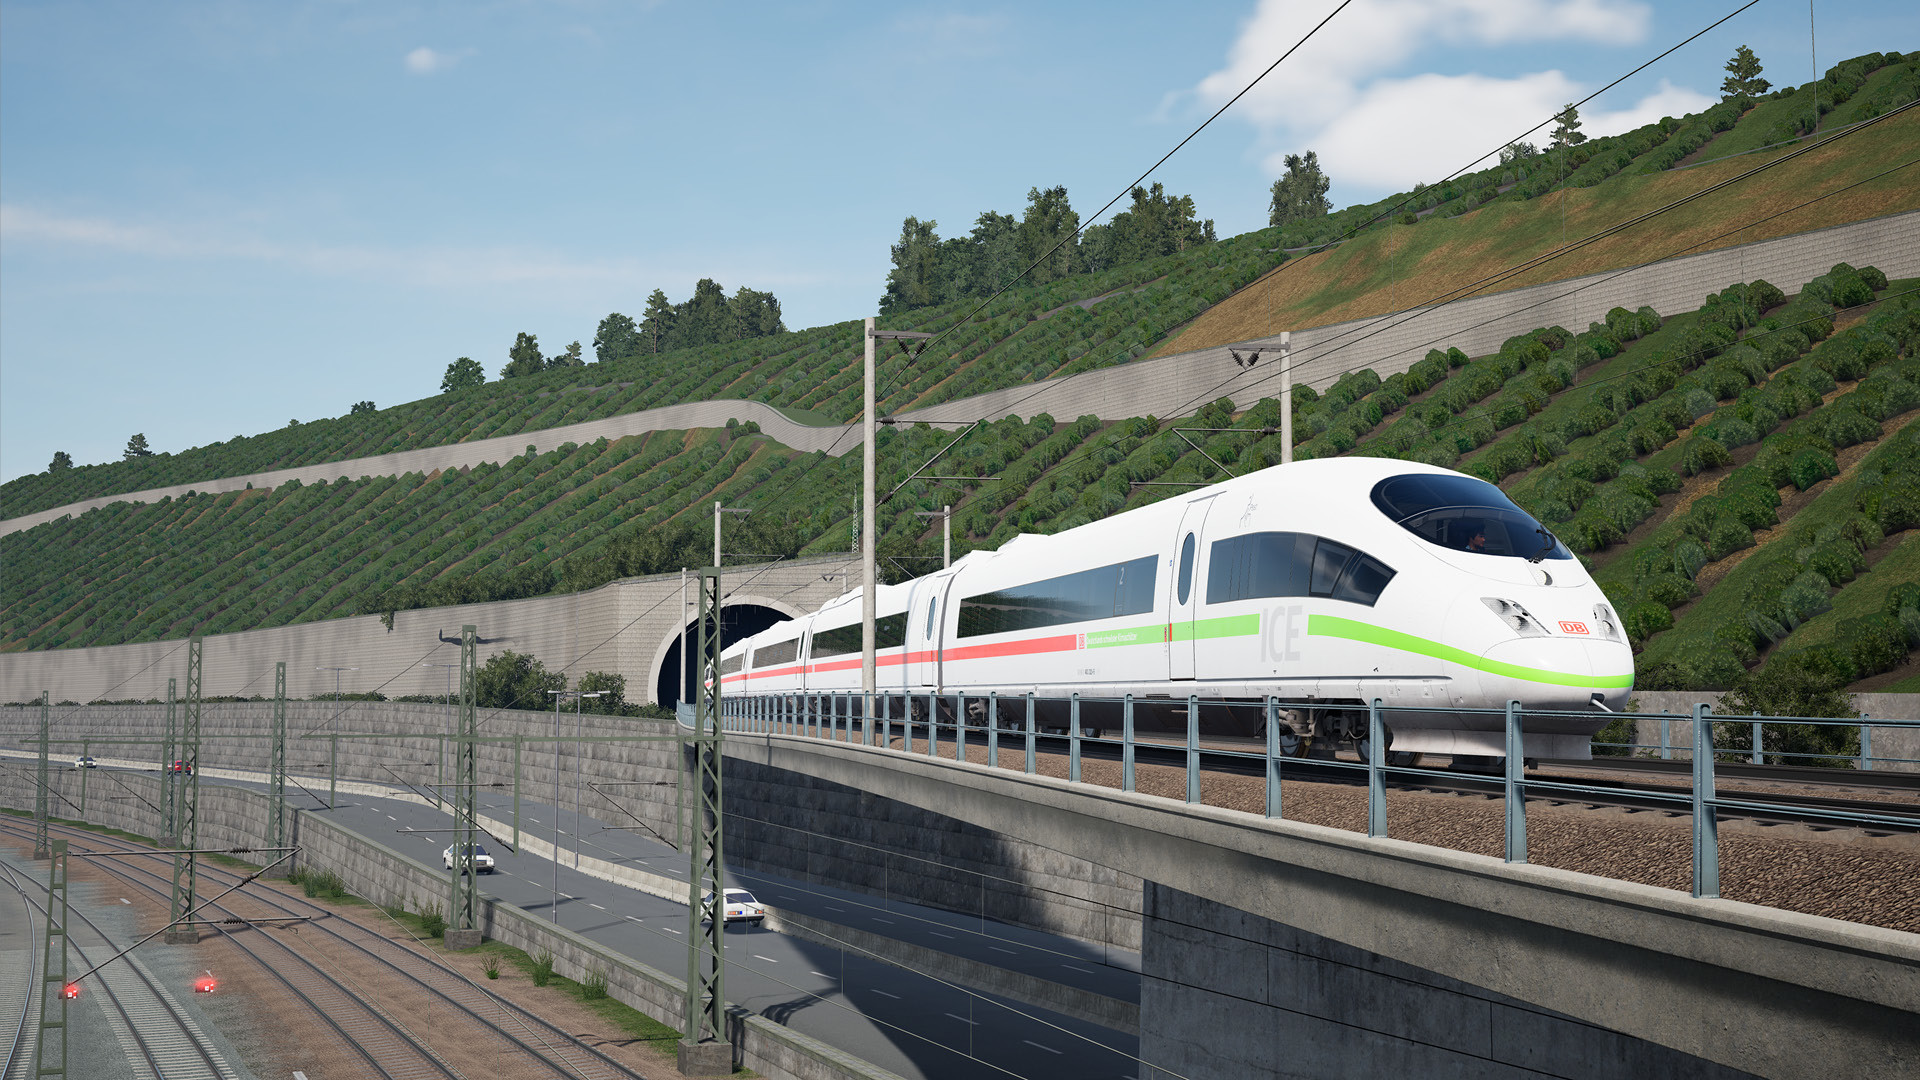 La sortie de Train Sim World 3, le nouveau simulateur de train, a été annoncée pour le 6 septembre